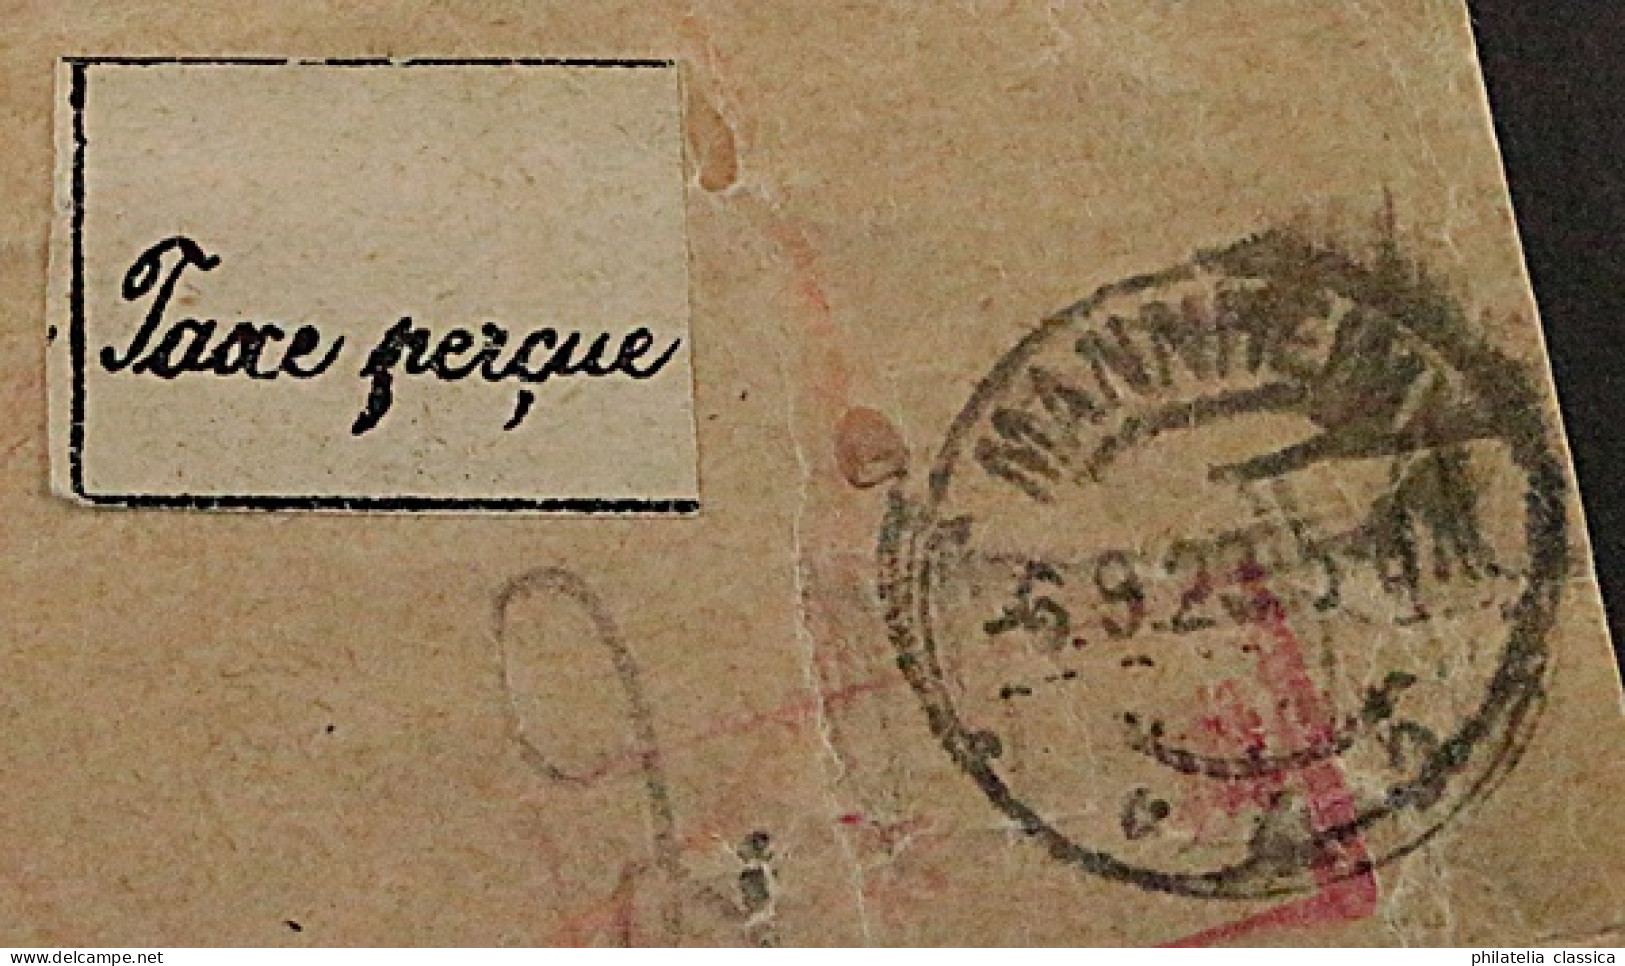 1923, MANNHEIM 4 Gebührenzettel Auf Auslands-Brief Nach BASEL Sehr Selten 700,-€ - 1922-1923 Local Issues